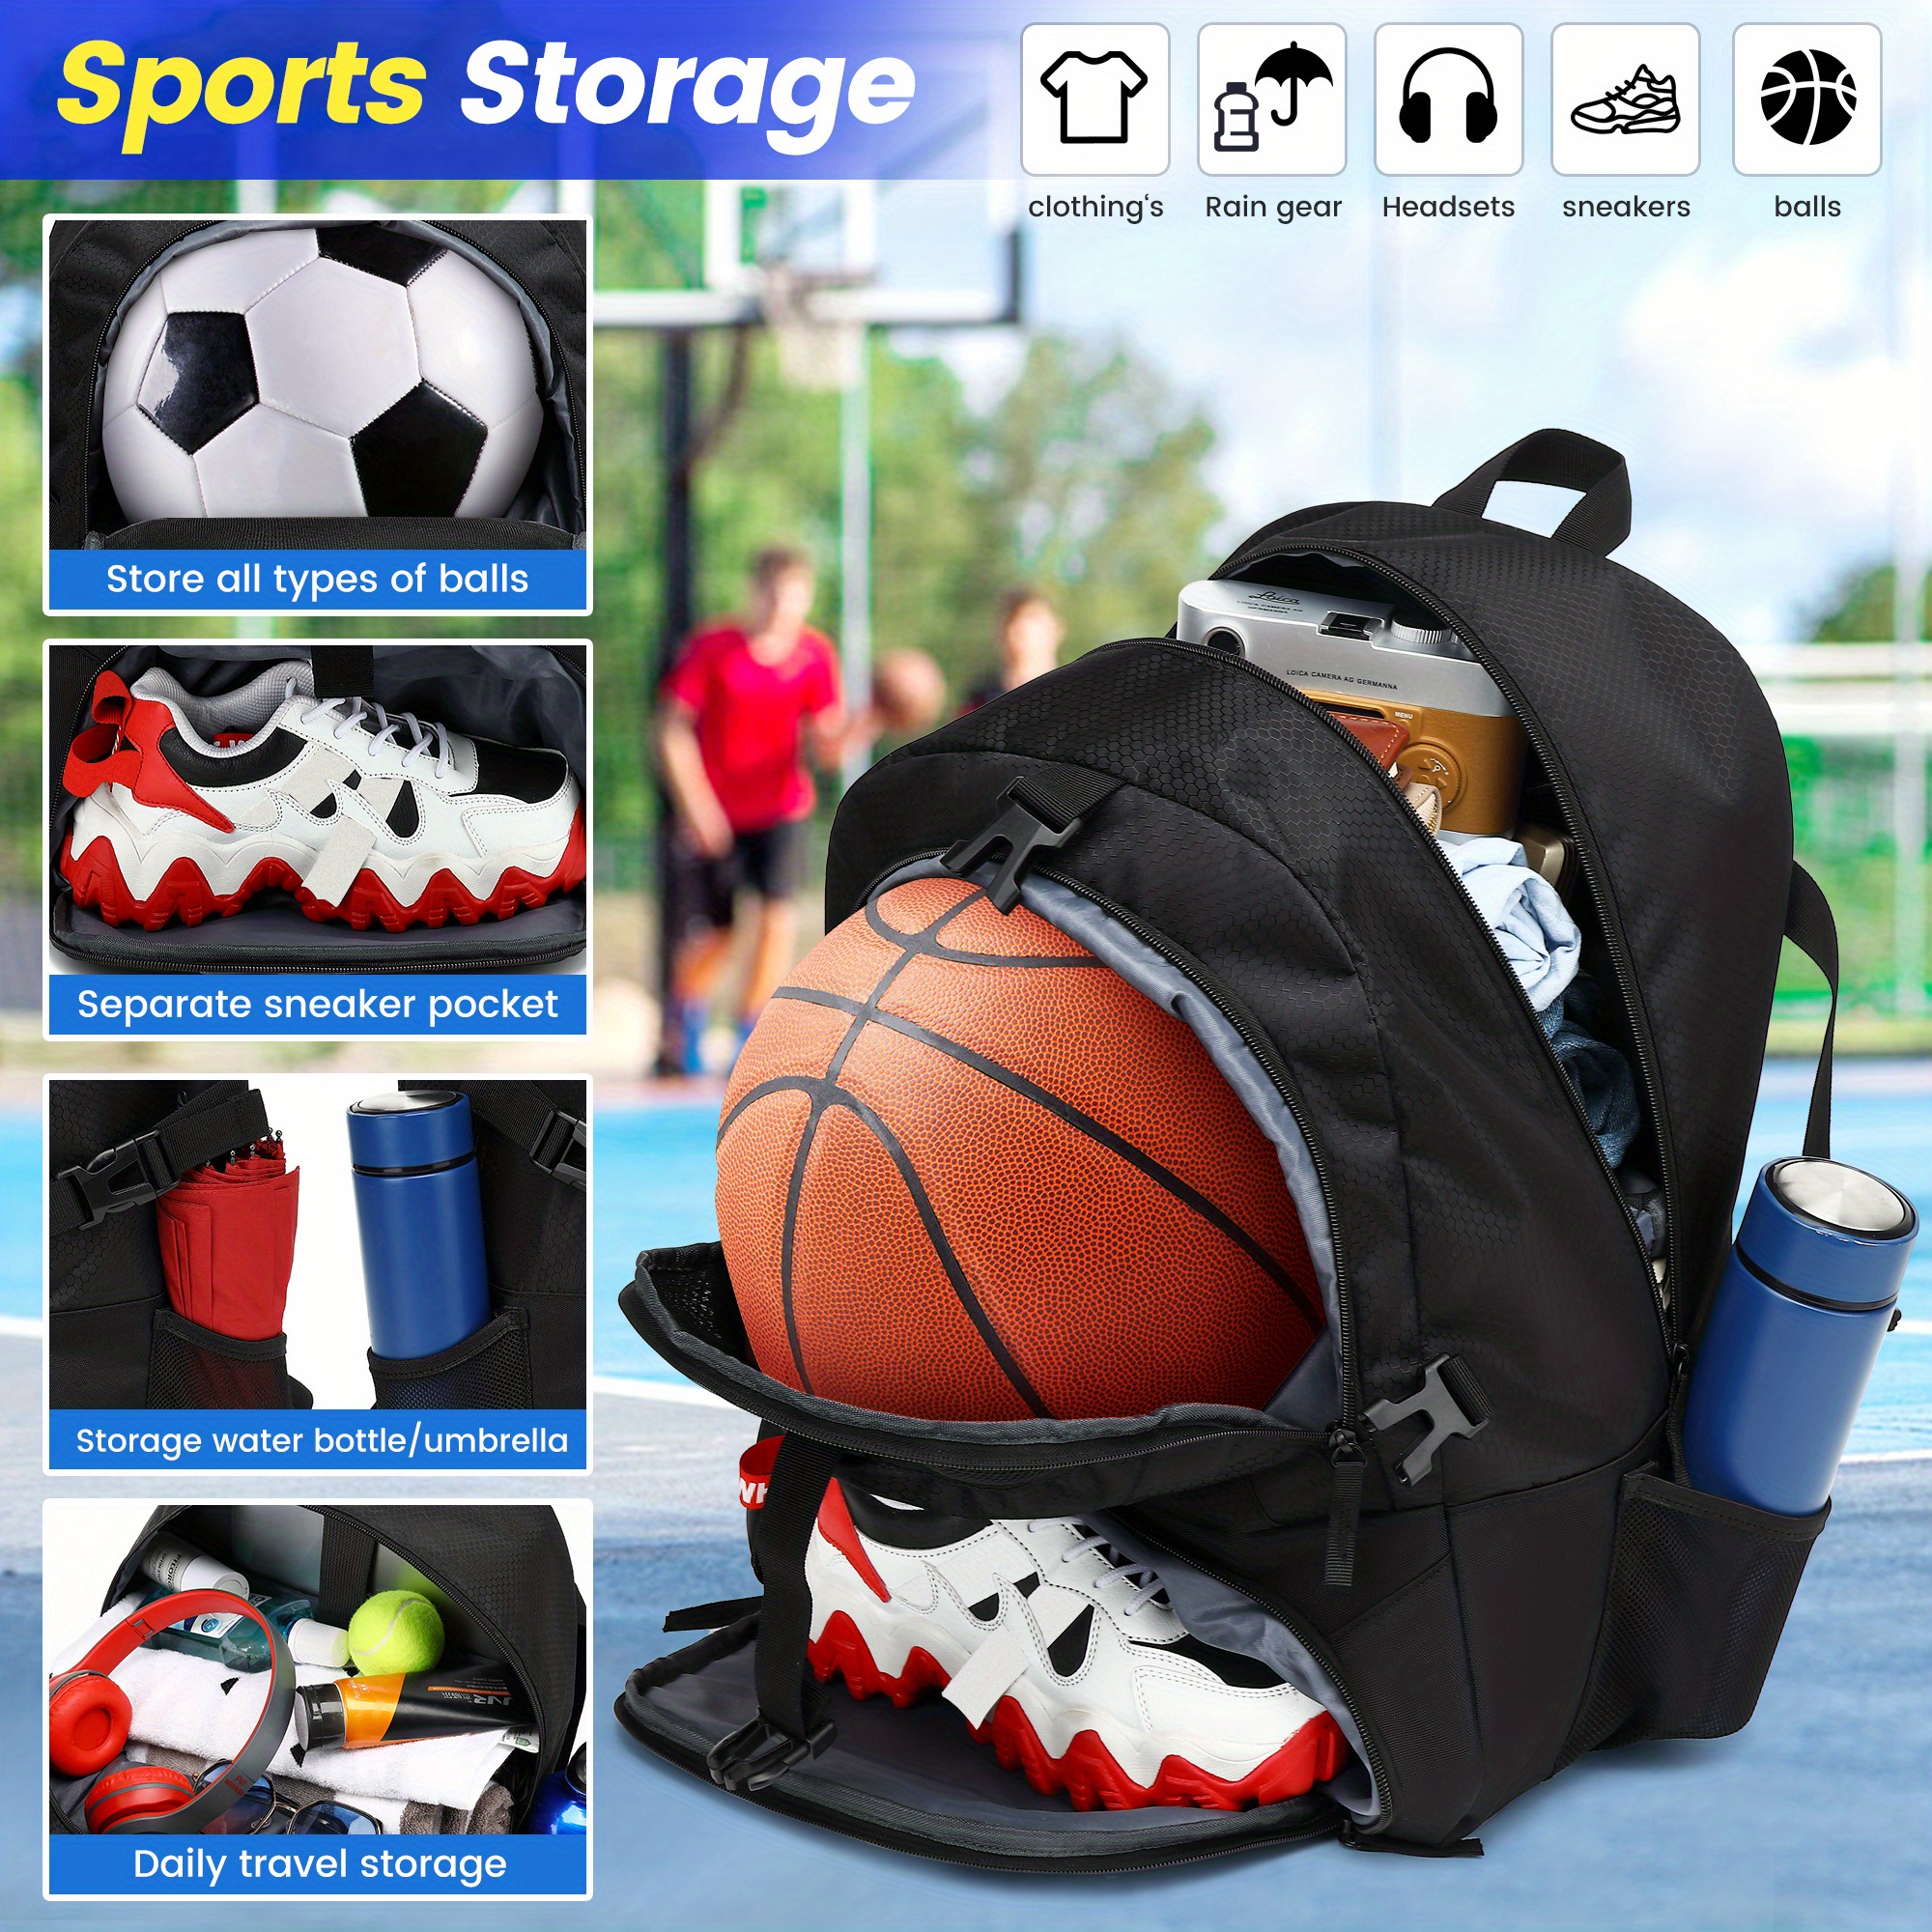 Bolsa de fútbol juvenil, mochila deportiva al aire libre para fútbol,  baloncesto, voleibol con zapatos y compartimento para pelotas.